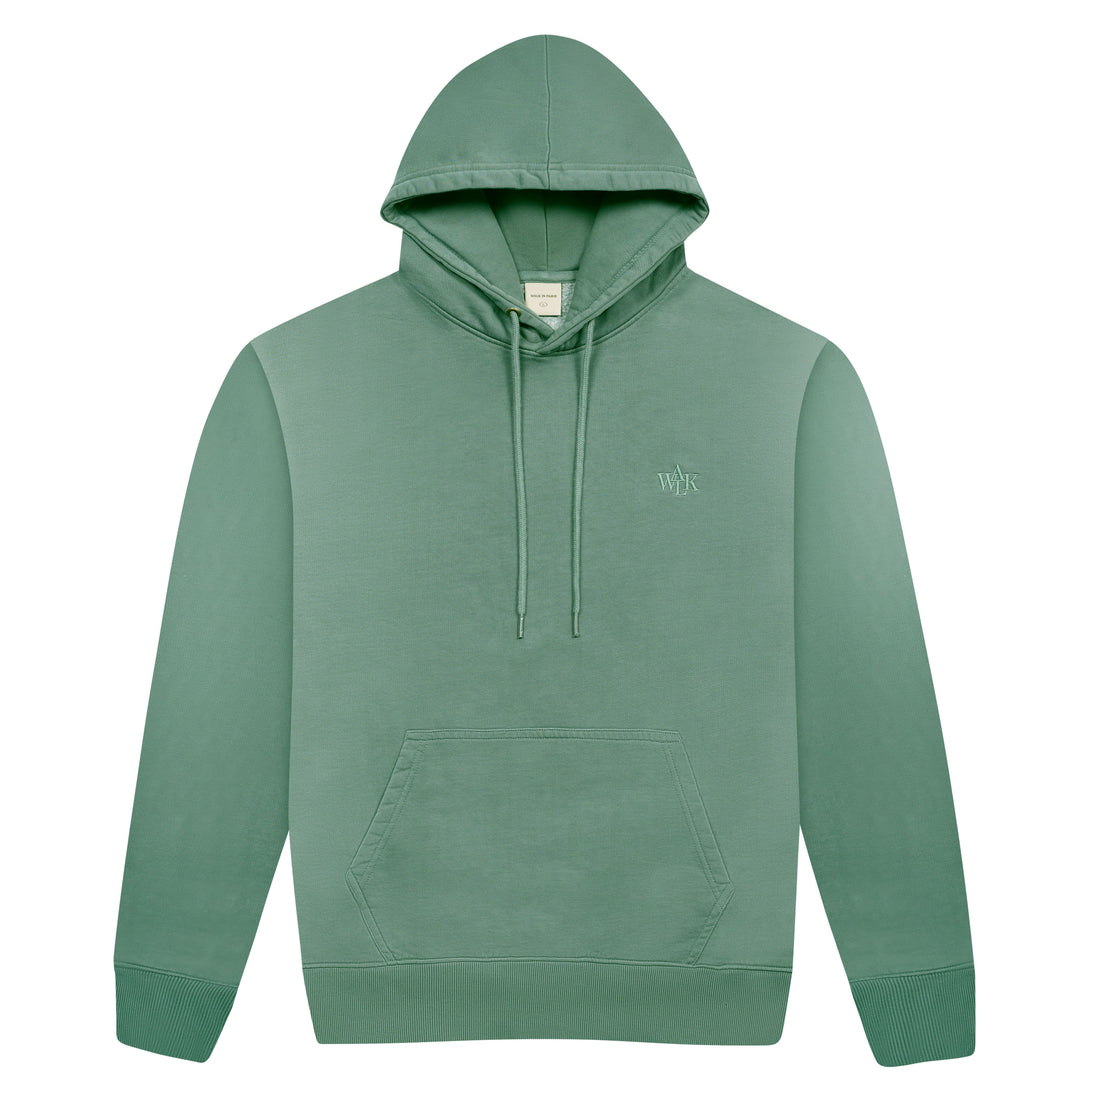 Le hoodie délavé vert